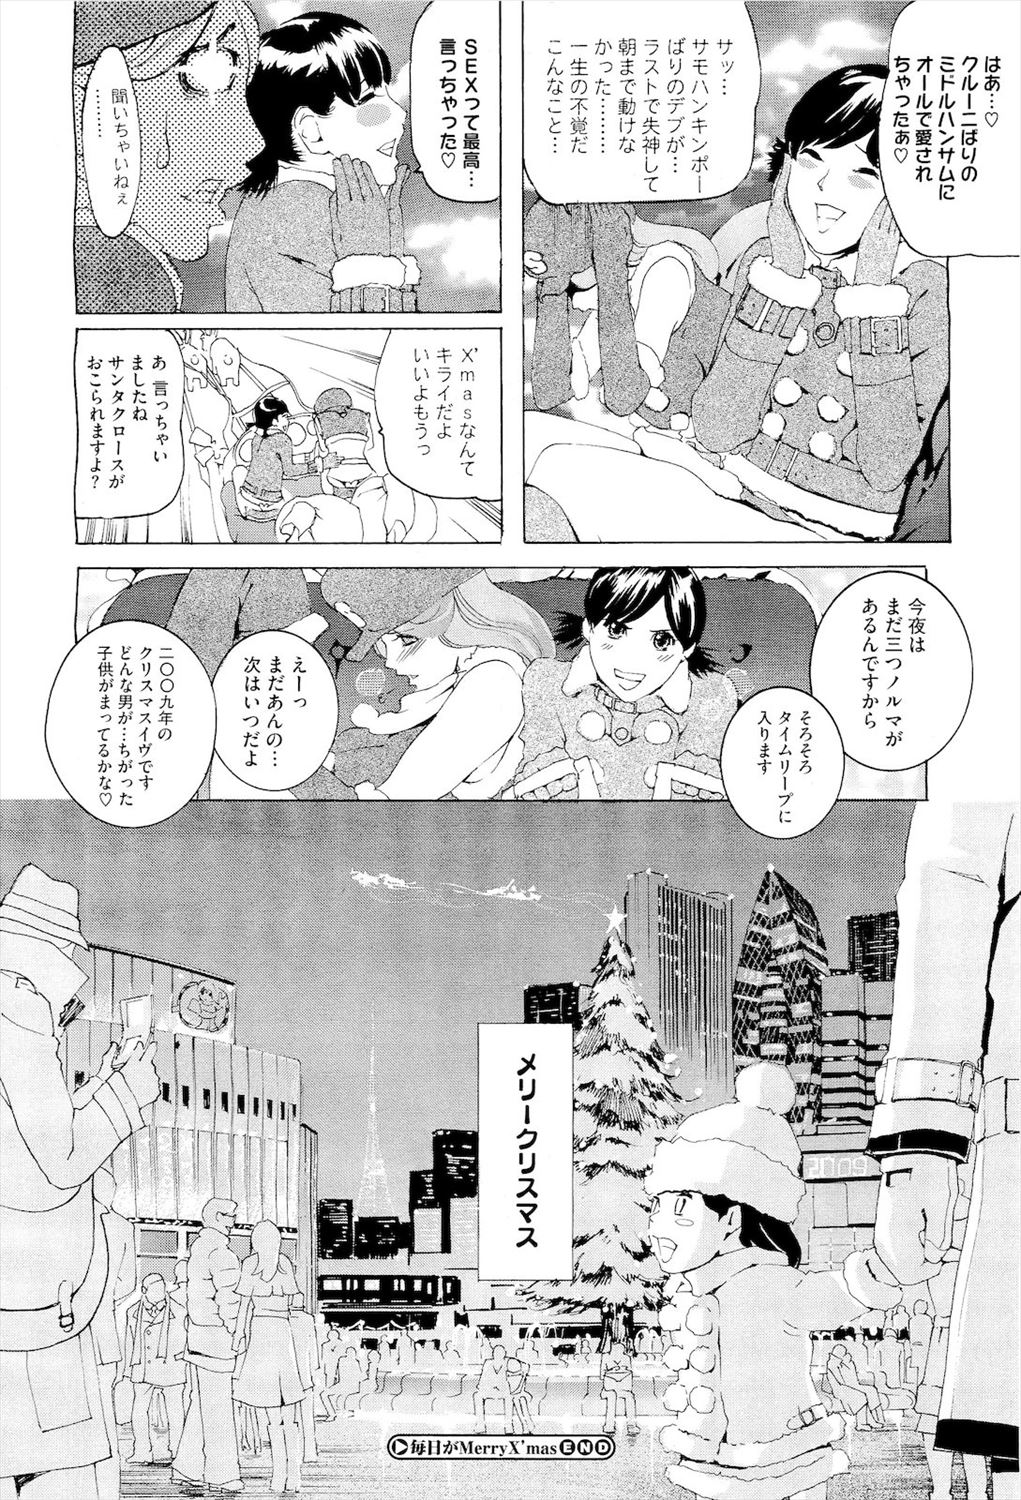 【エロ漫画】クリスマスに来る美女サンタクロースは童貞男達のもとに現れて一夜のセックスプレゼントしちゃいますｗｗｗ